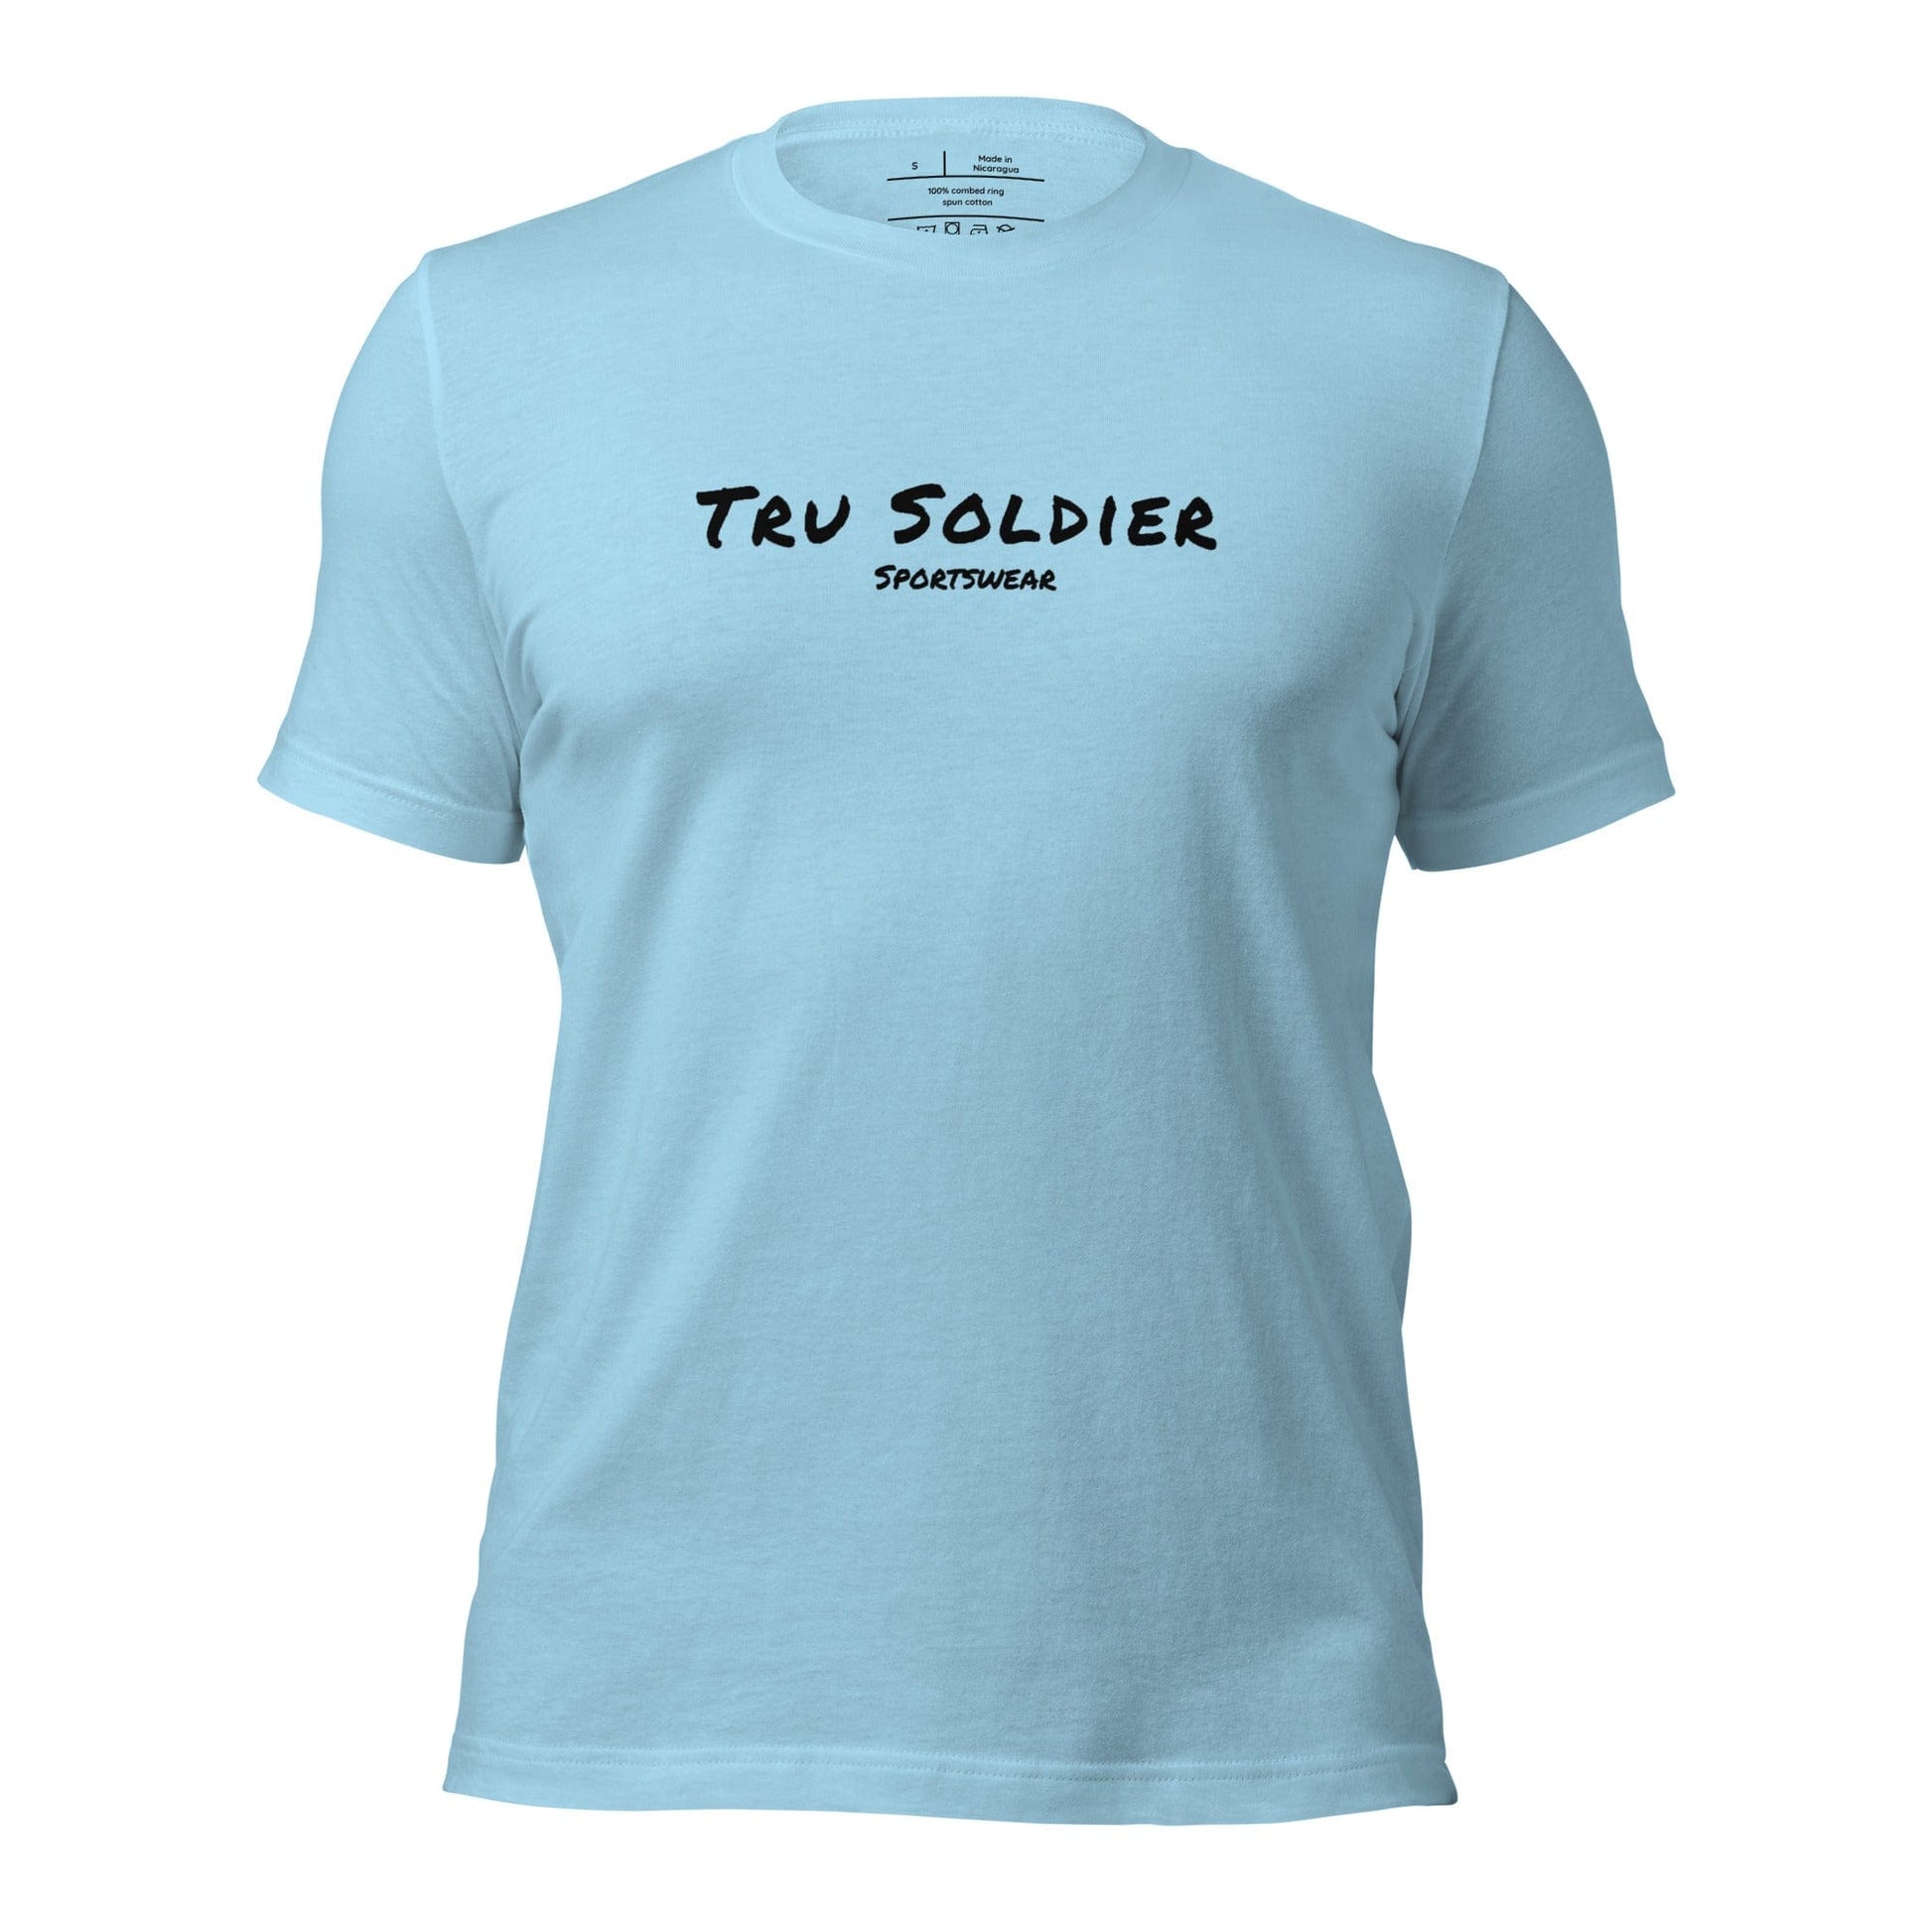 Tru Soldier Sportswear  Ocean Blue / S Unisex t-shirt